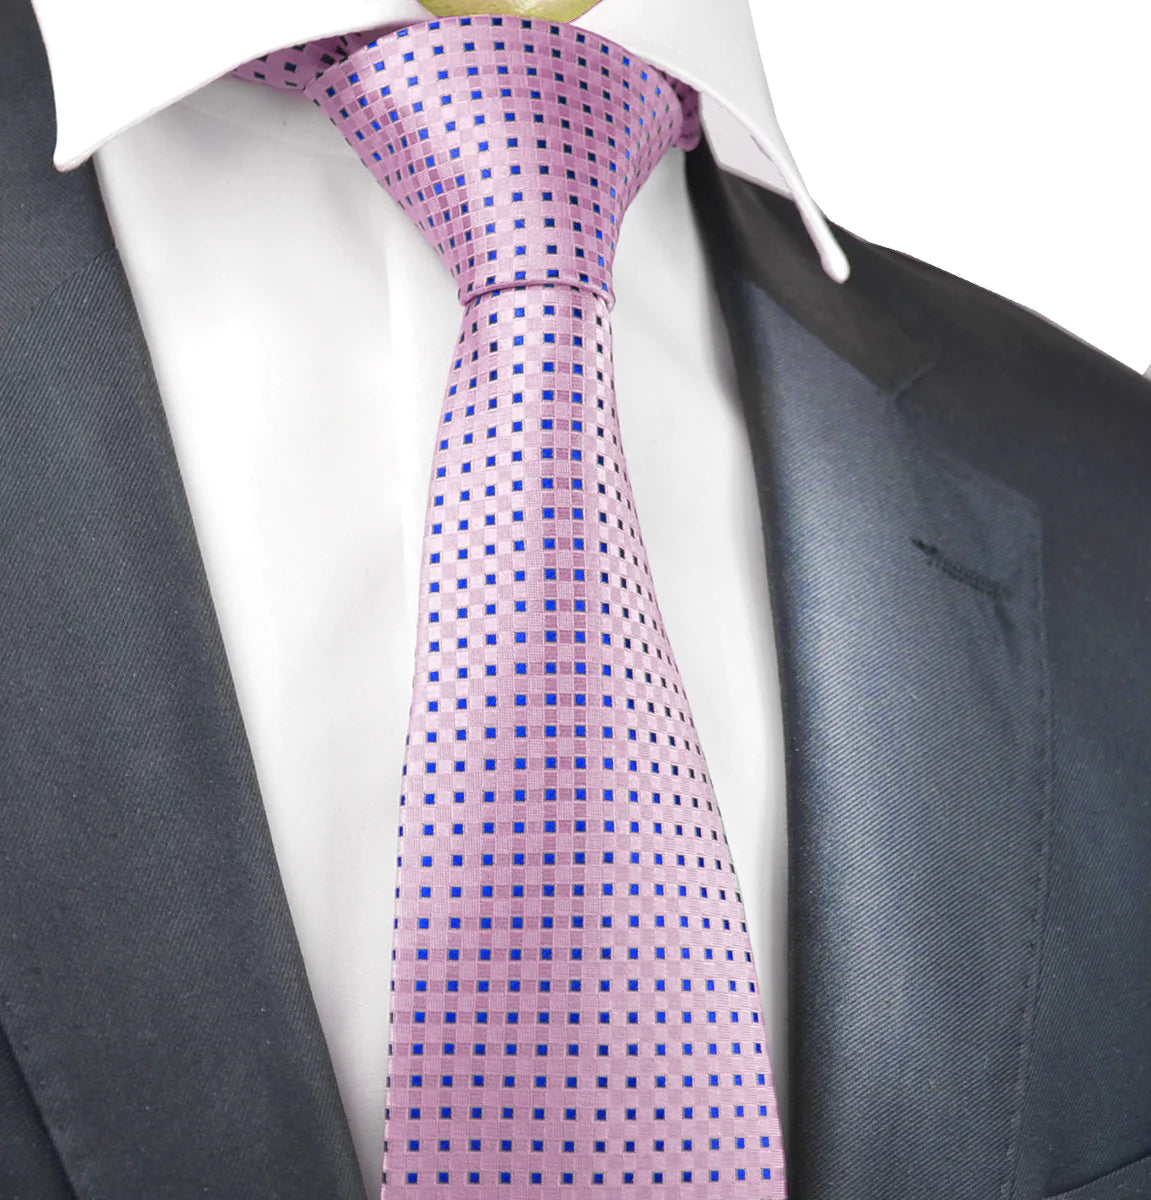 Pink Classic Diamond Patterned Tie - - u u u L . - L LI o n - 